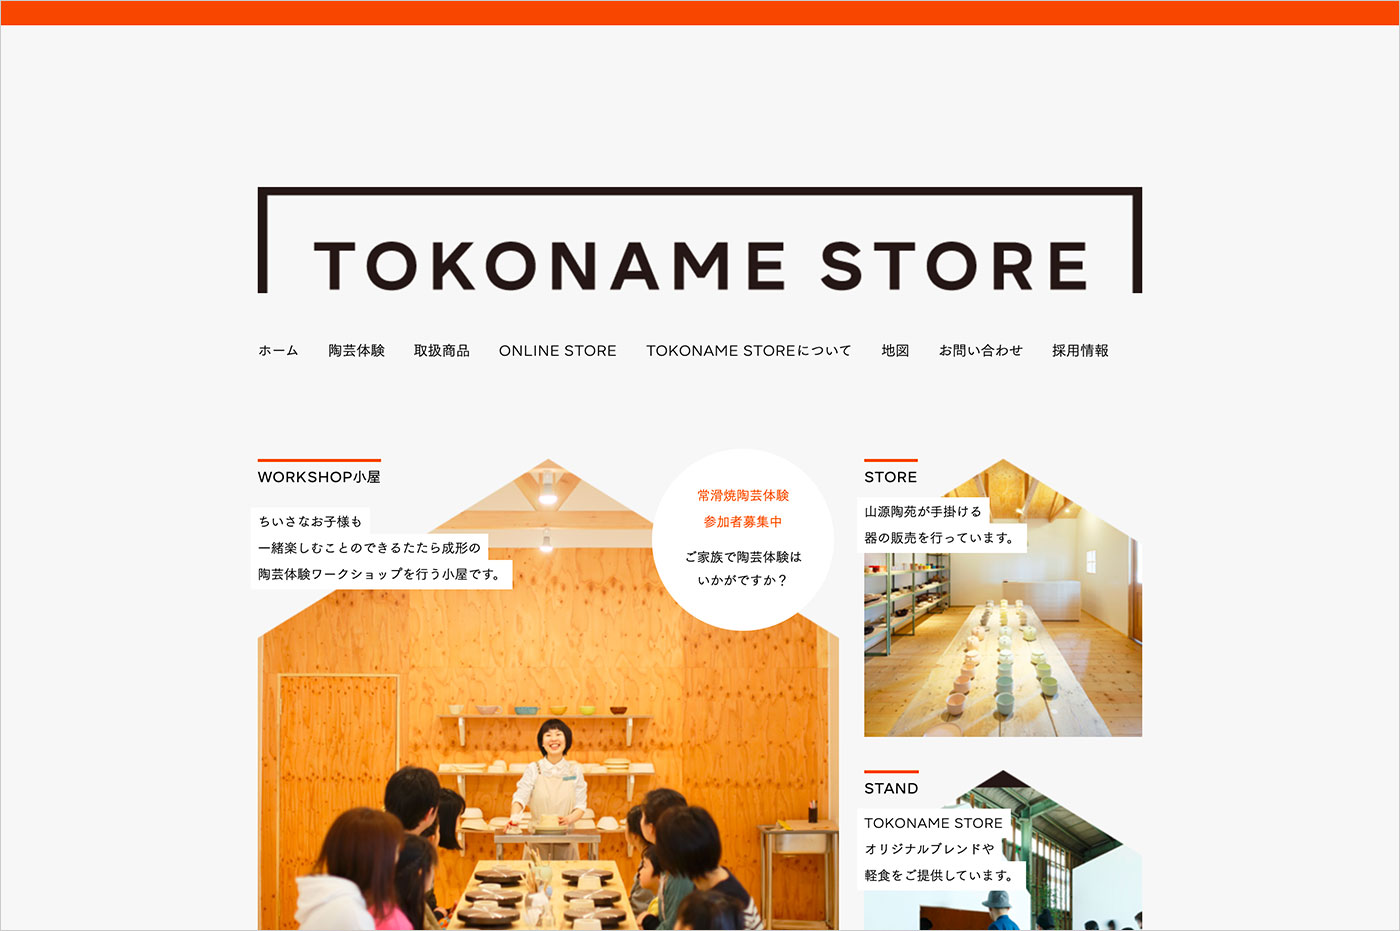 TOKONAME STOREウェブサイトの画面キャプチャ画像